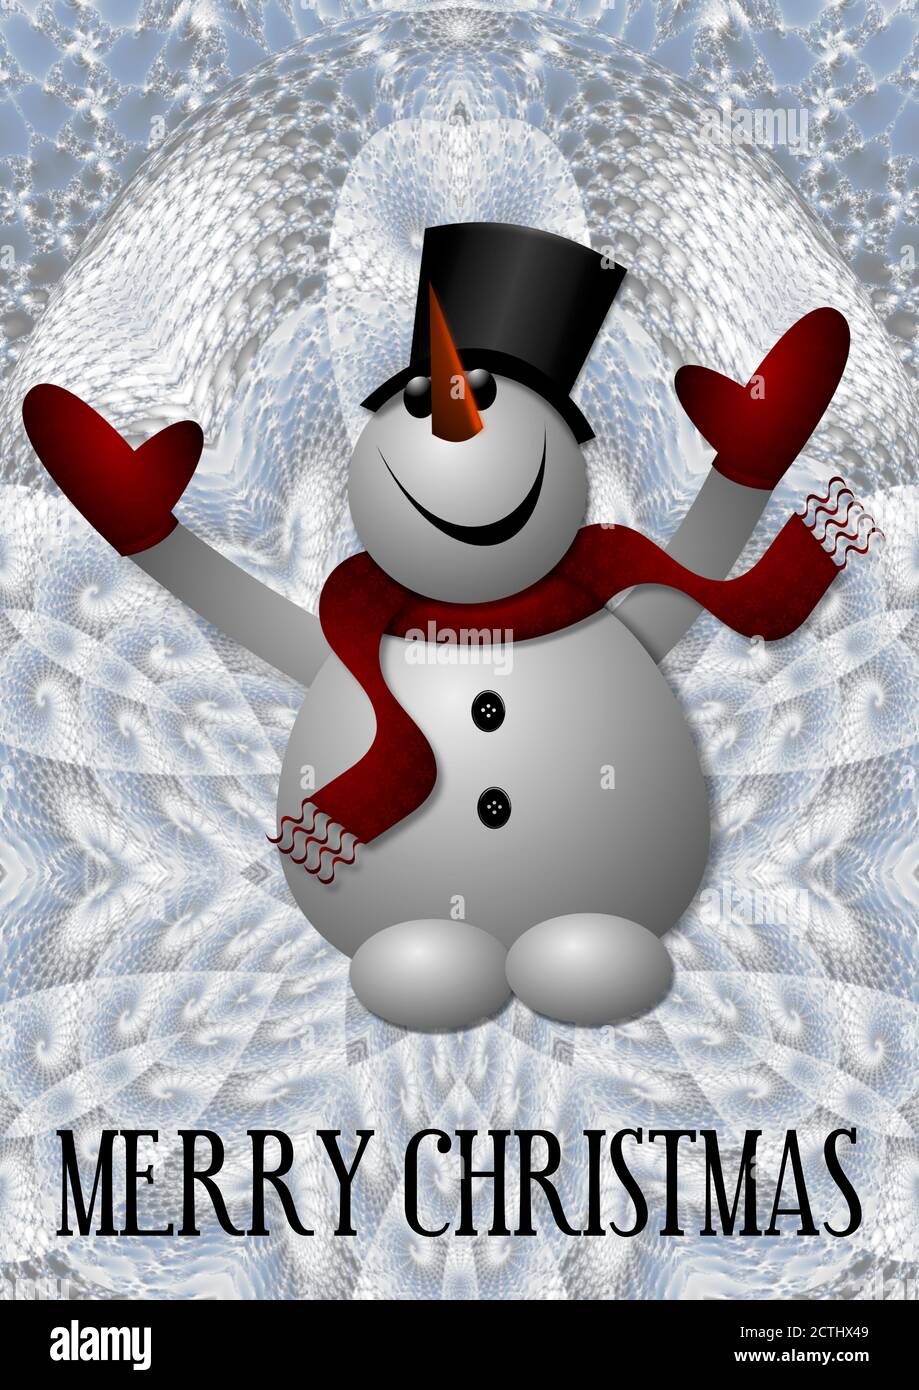 Schneemann mit Zylinderhut, rotem Schal und Handschuhen. Und ist das eine Karotte für eine Nase? Frohe Weihnachten an alle. Stockfoto